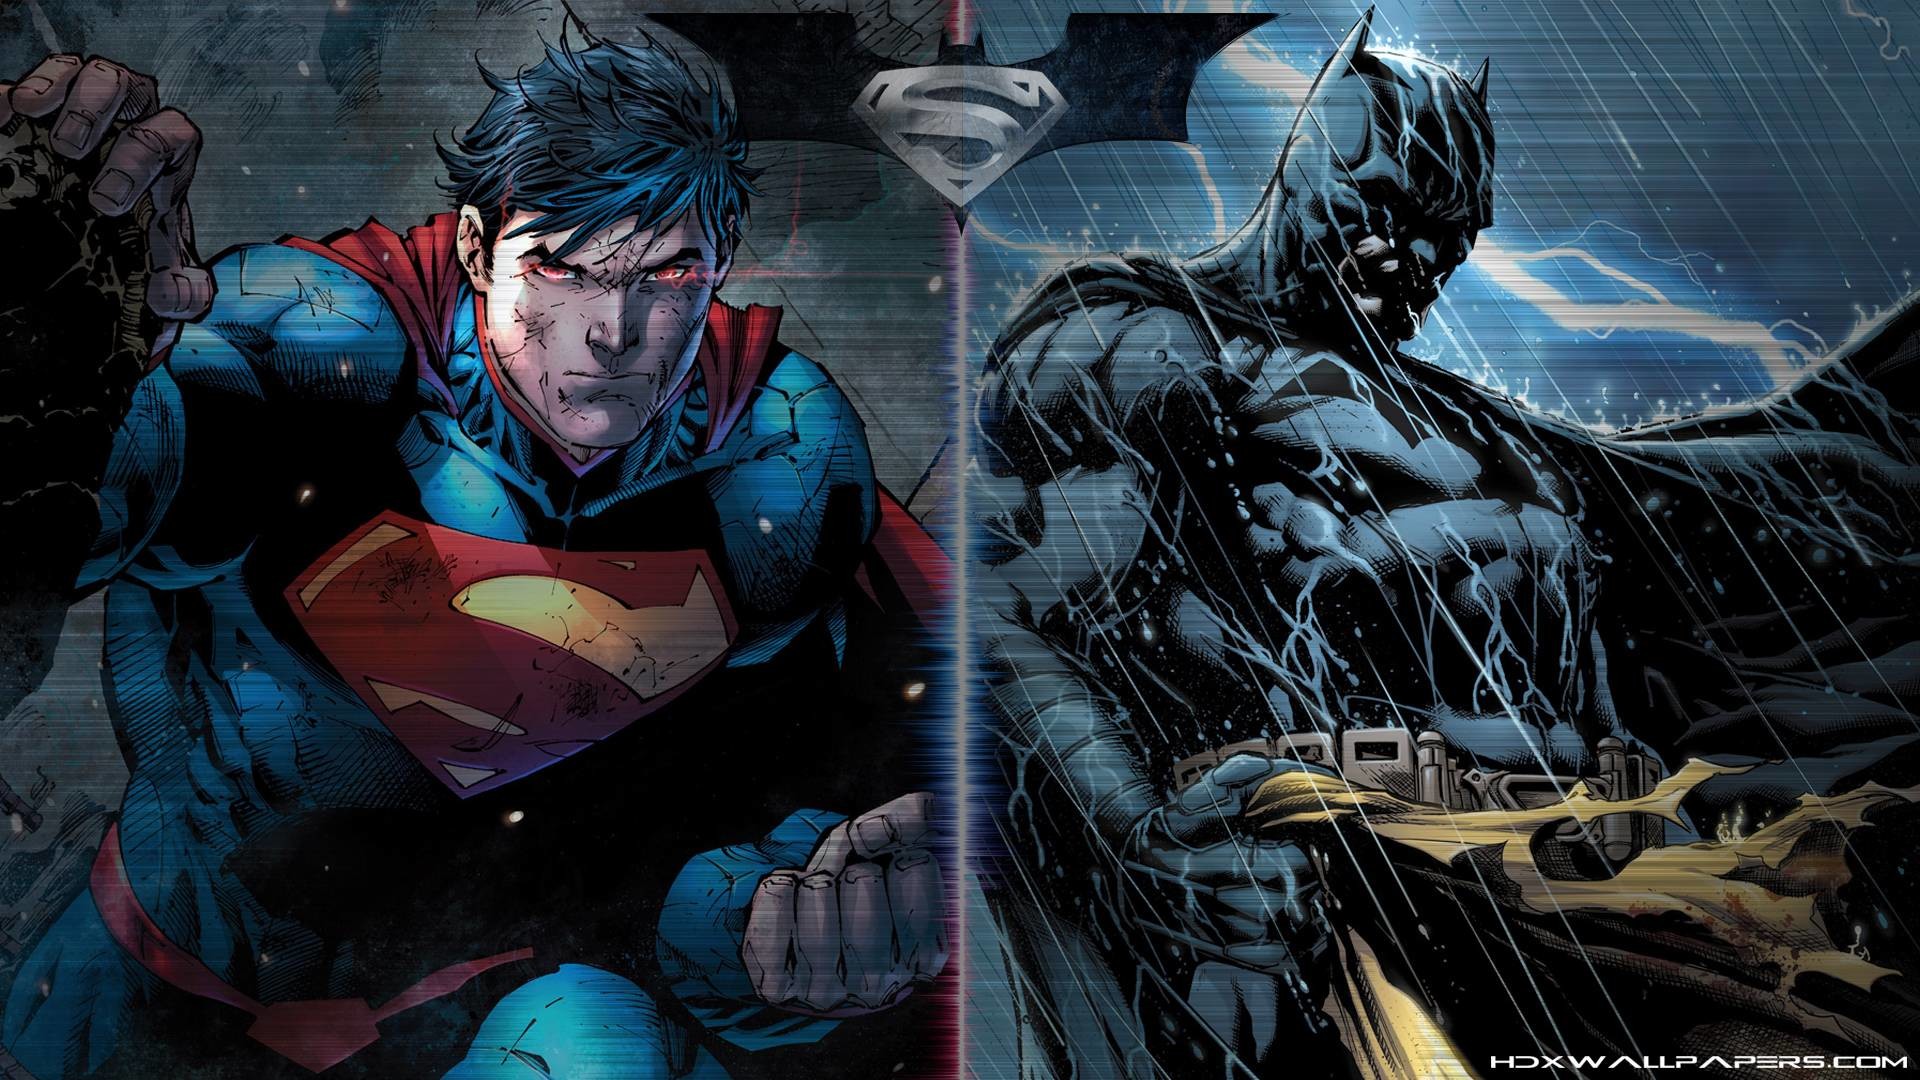 1920x1080 Wallpapers For > Batman Vs Superman 2015 Wallpaper